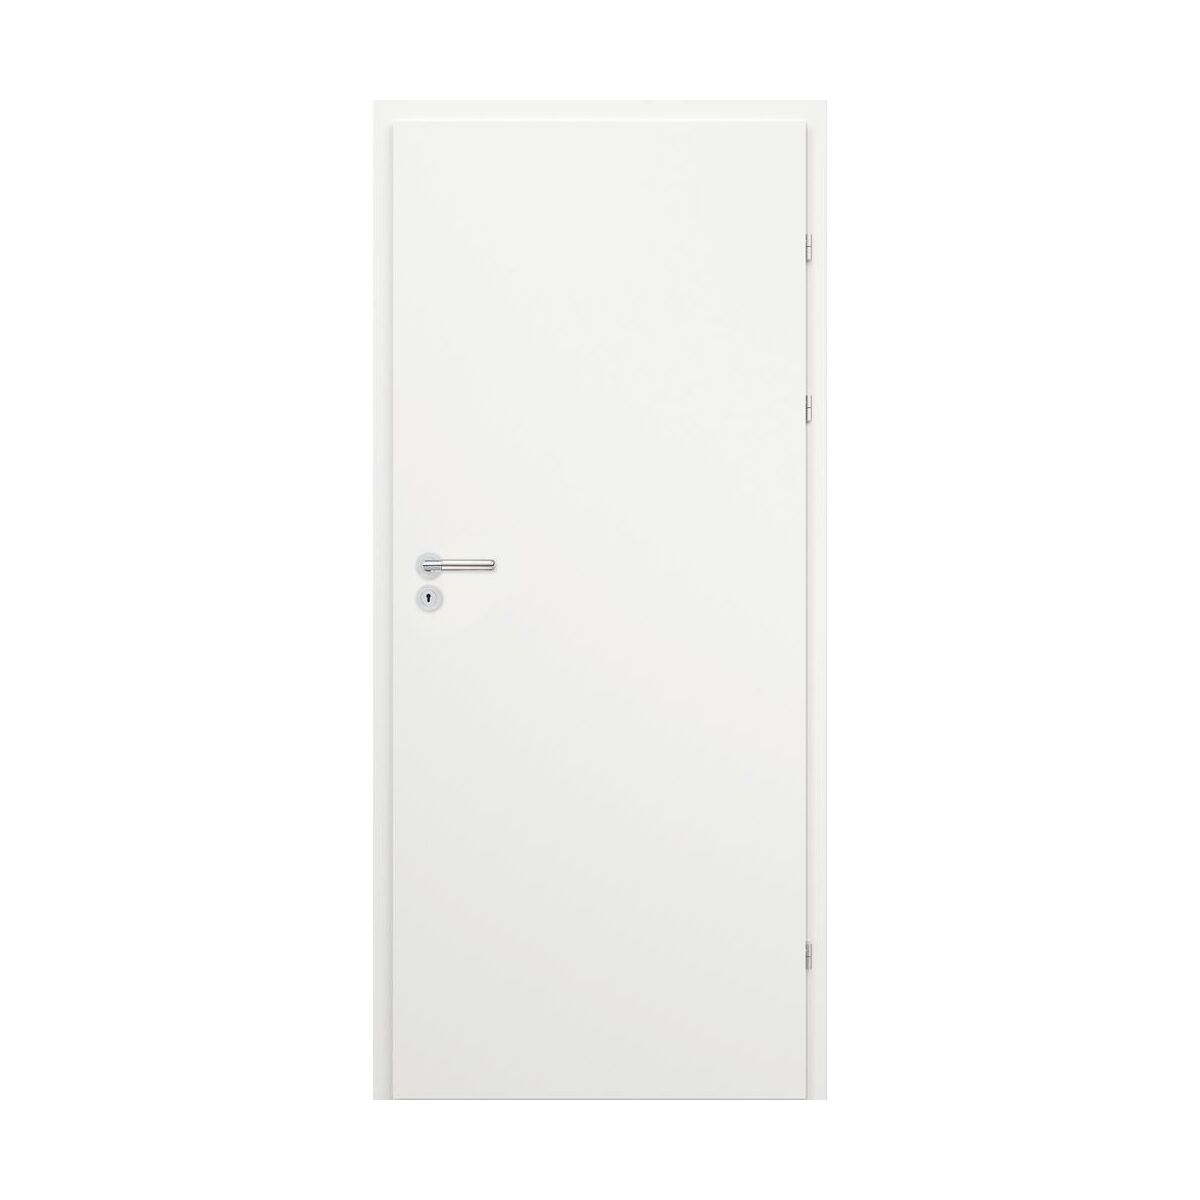 Drzwi wewnętrzne lakierowane pełne Kesa białe 80 prawe Classen